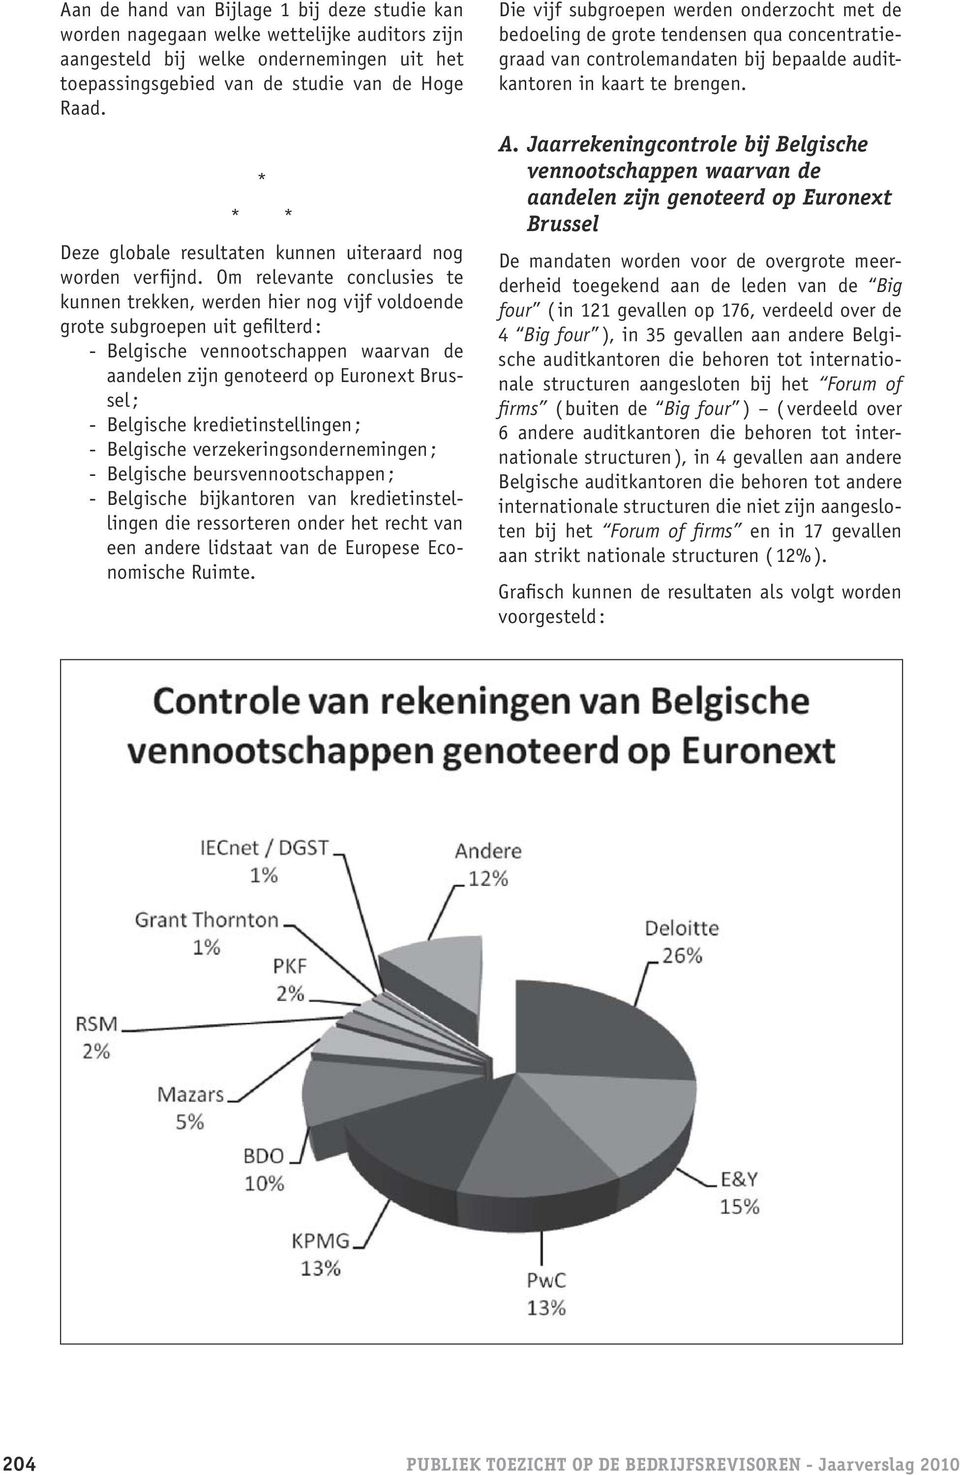 Om relevante conclusies te kunnen trekken, werden hier nog vijf voldoende grote subgroepen uit gefilterd : - Belgische vennootschappen waarvan de aandelen zijn genoteerd op Euronext Brussel ; -